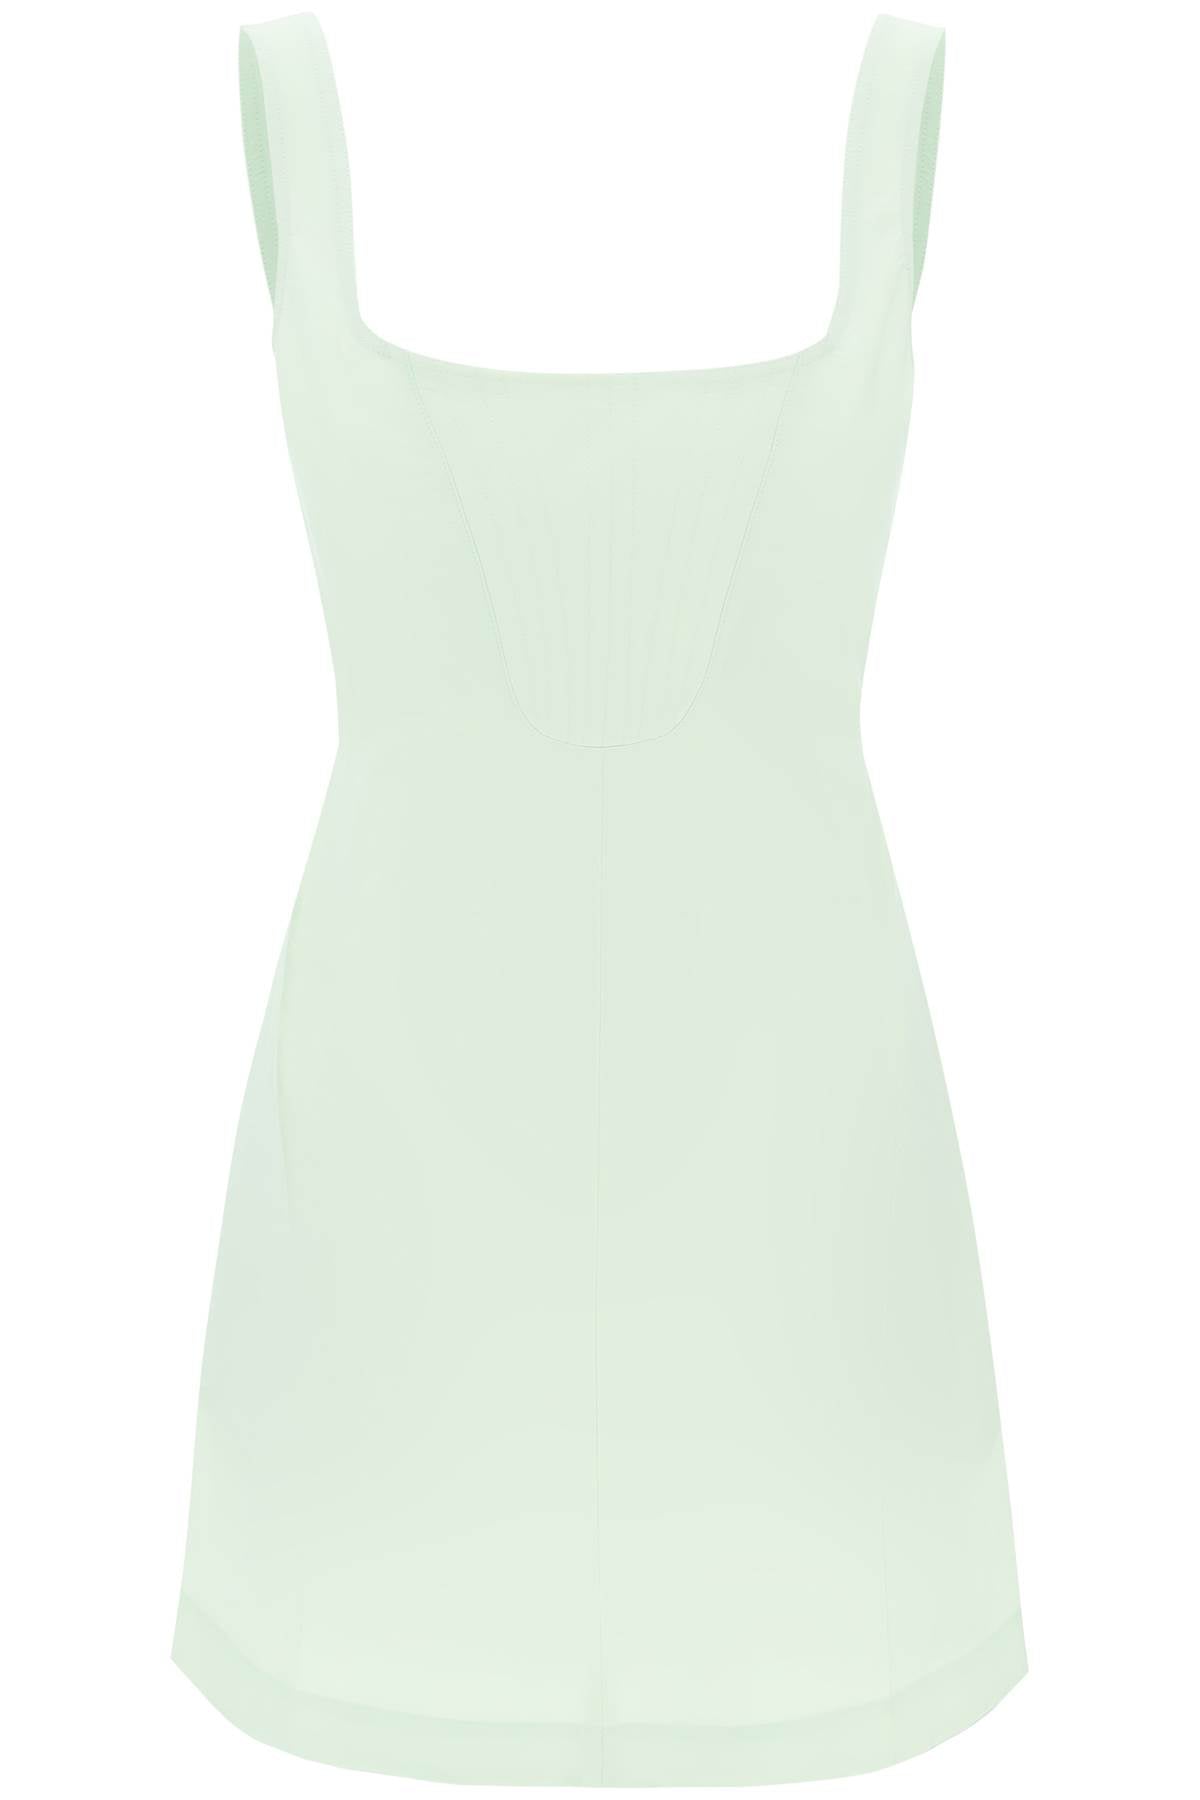 Stella mccartney mini corset-style dress-0